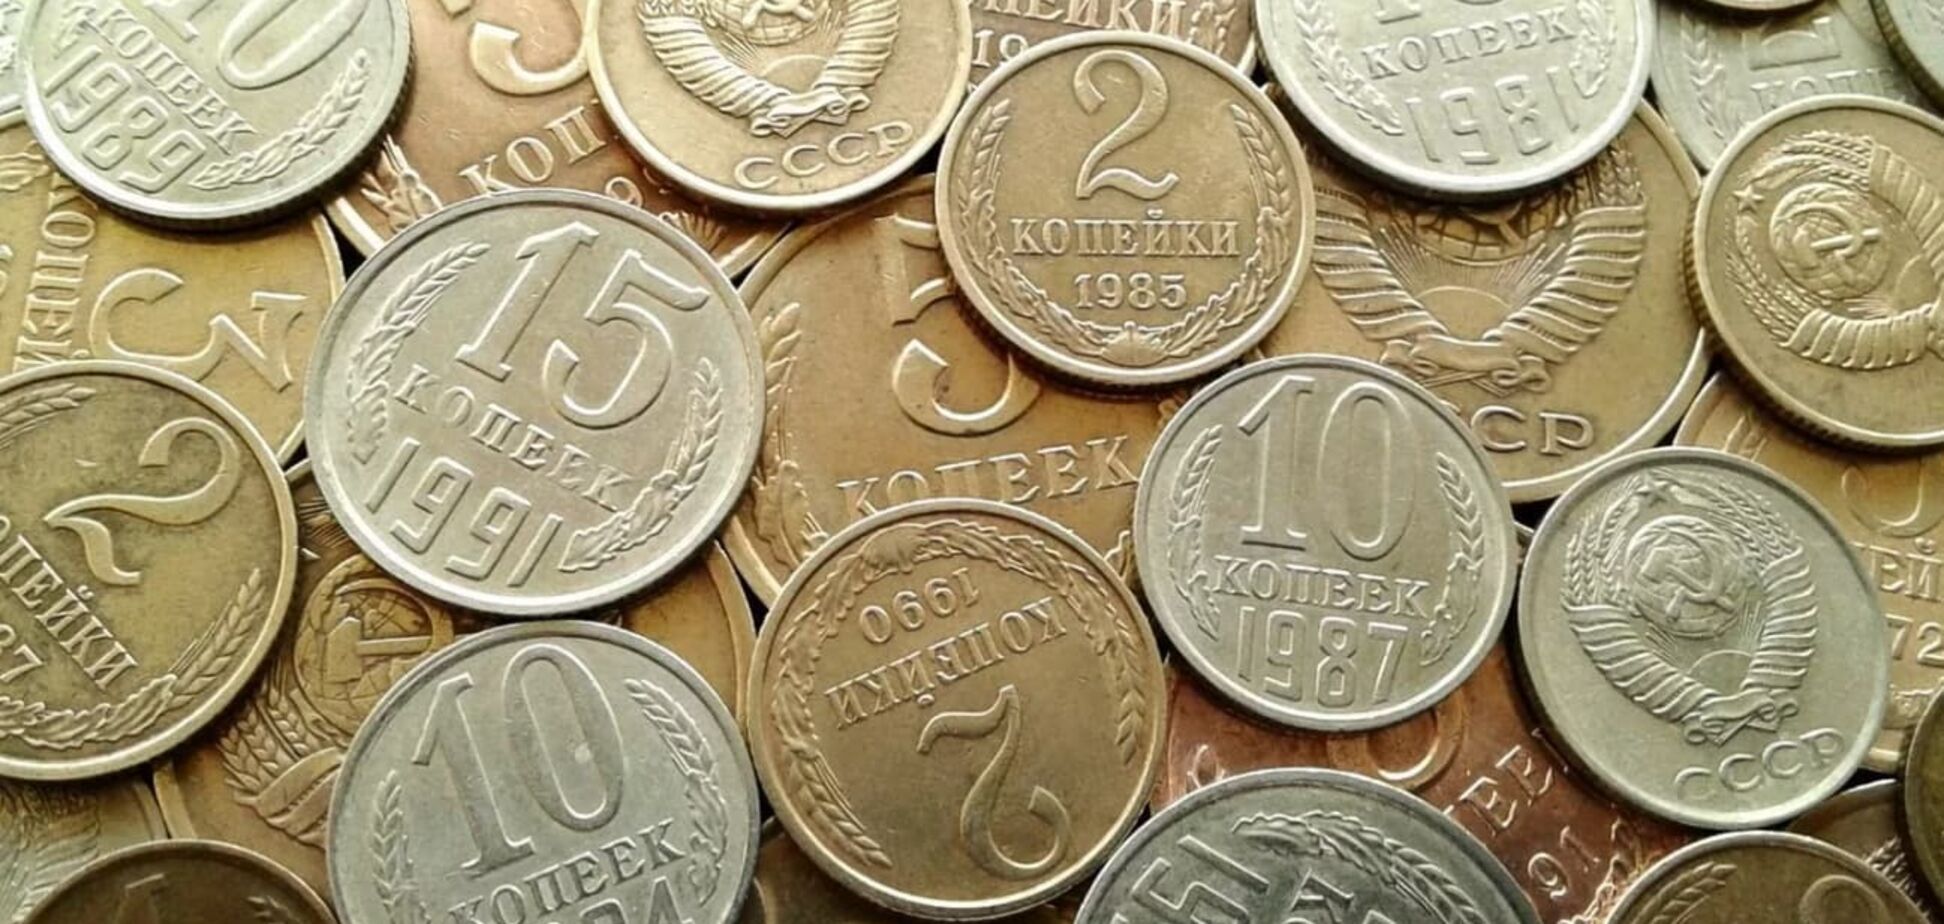 Получится ли заработать на старых монетах СССР